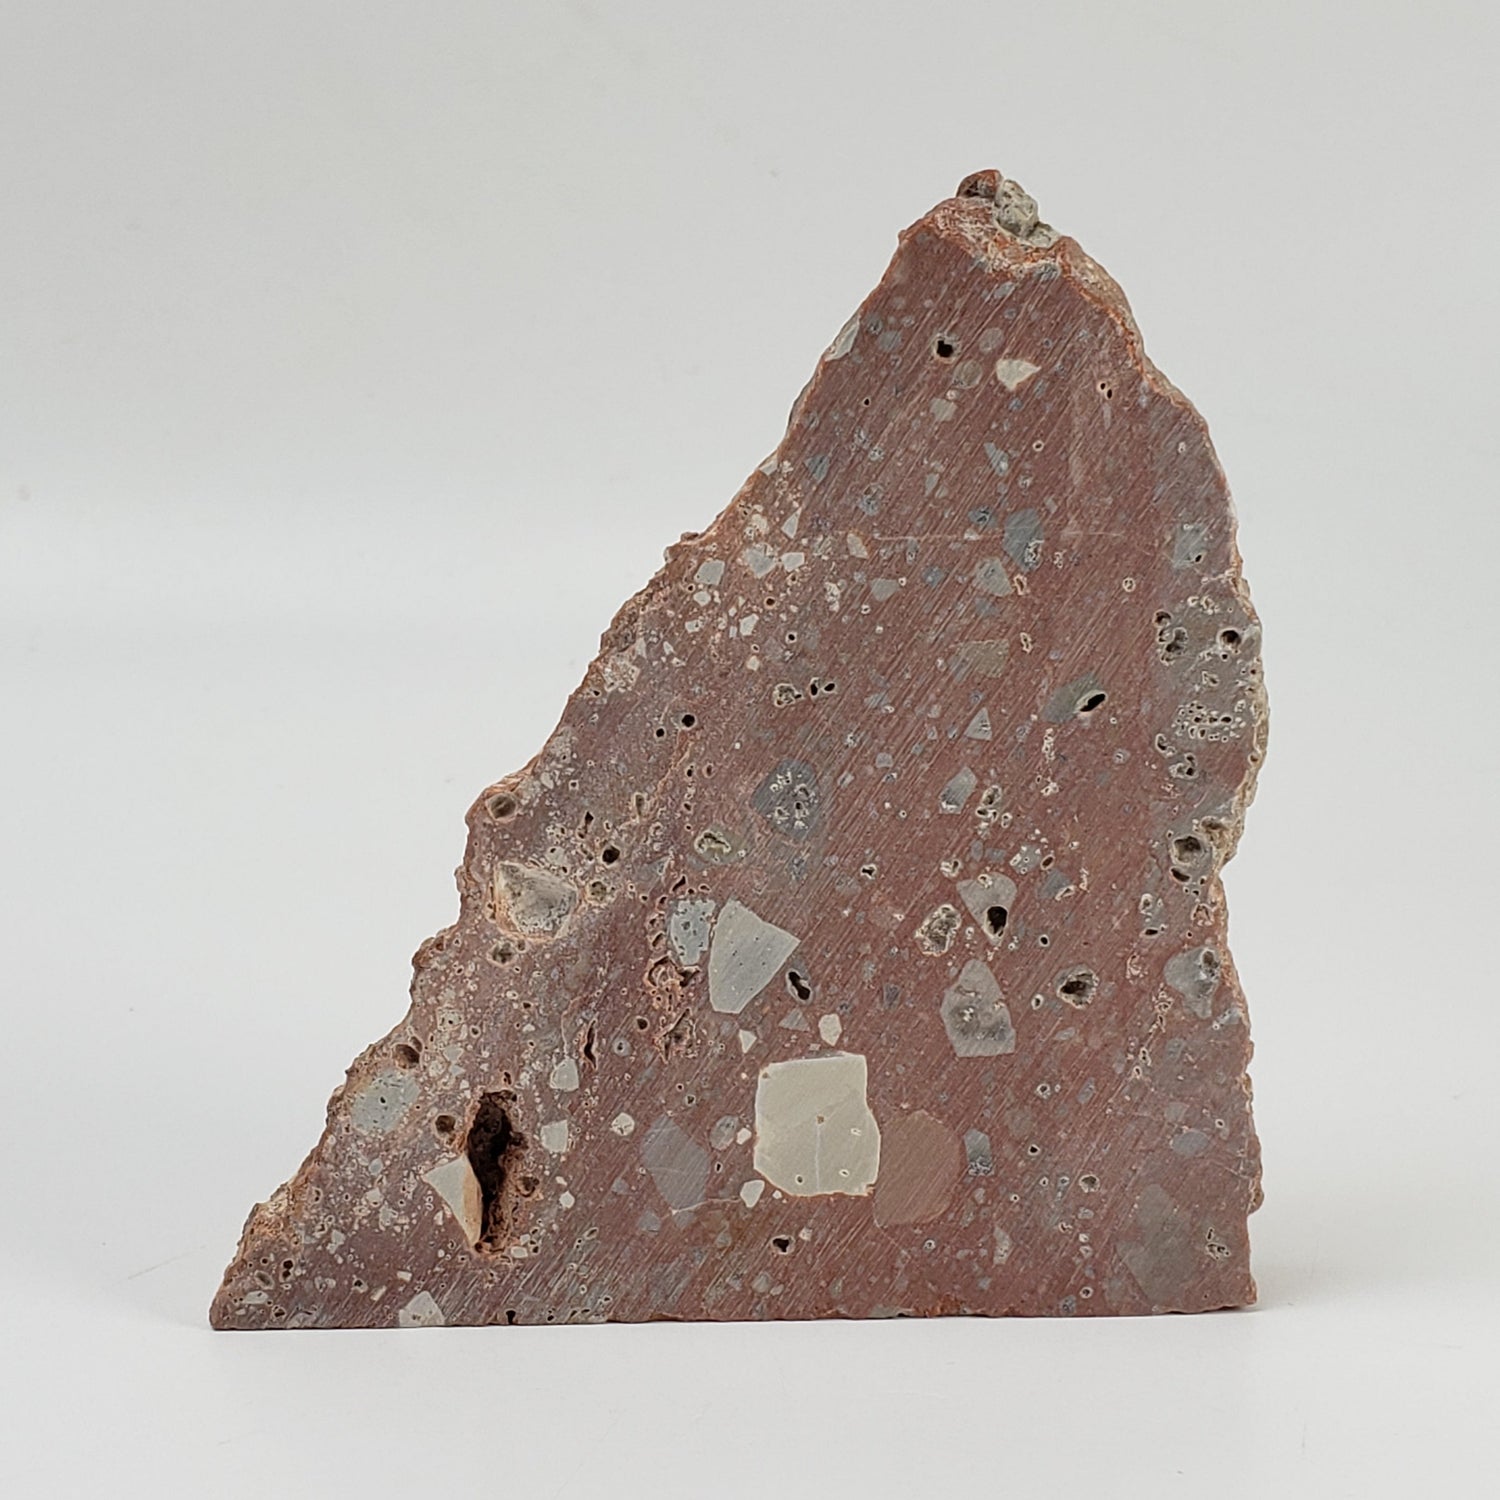 Azuara Basal Breccia | 110 Grams | Rubielos de la Cerida Impact Structure, Spain